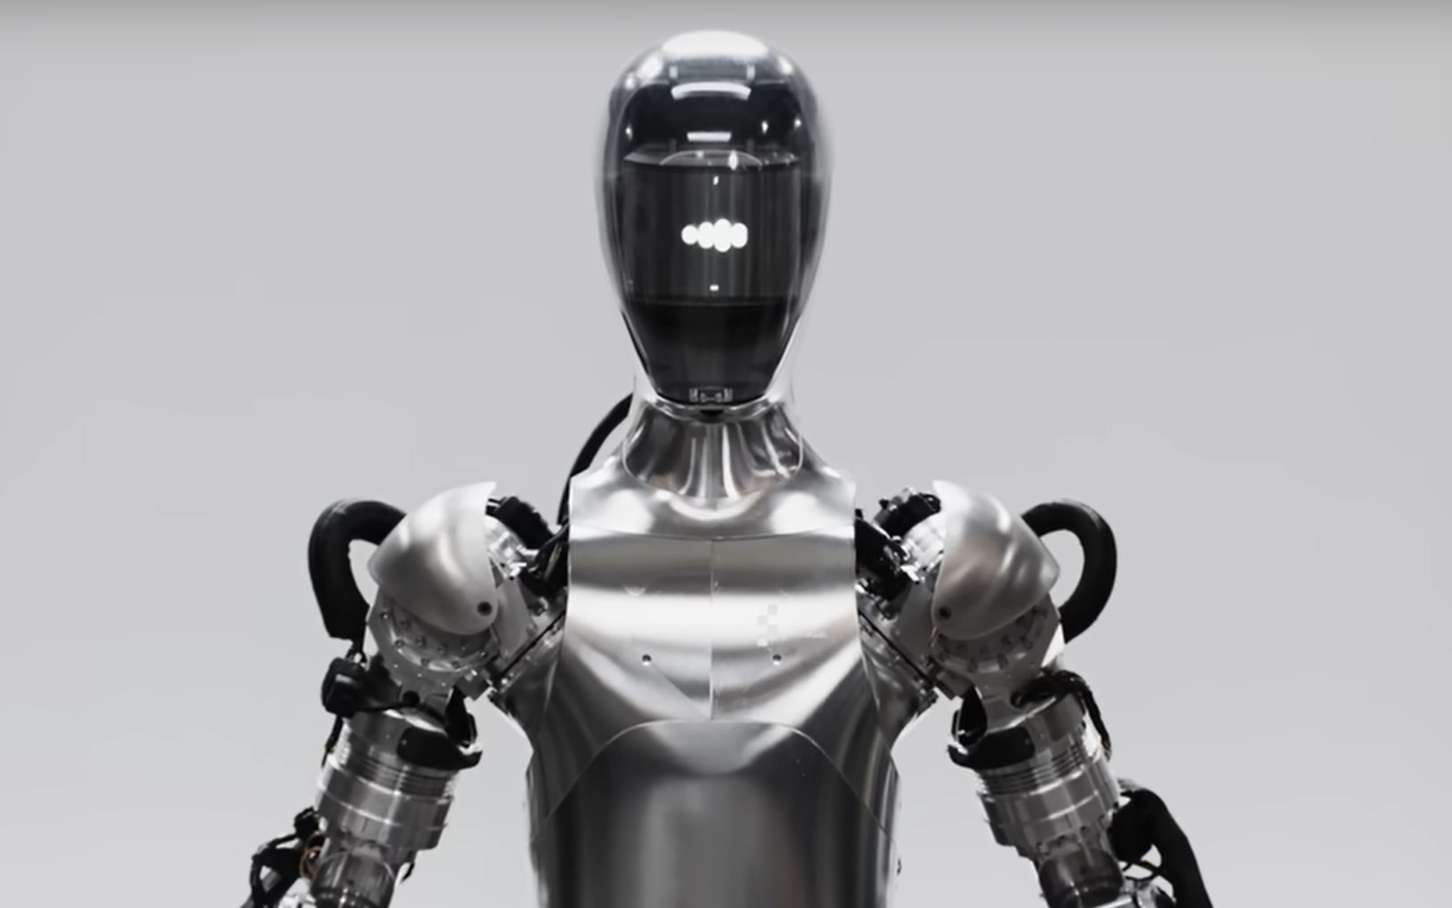 Impressionnant : regardez l'habilité et la conversation du robot humanoïde le plus avancé du monde